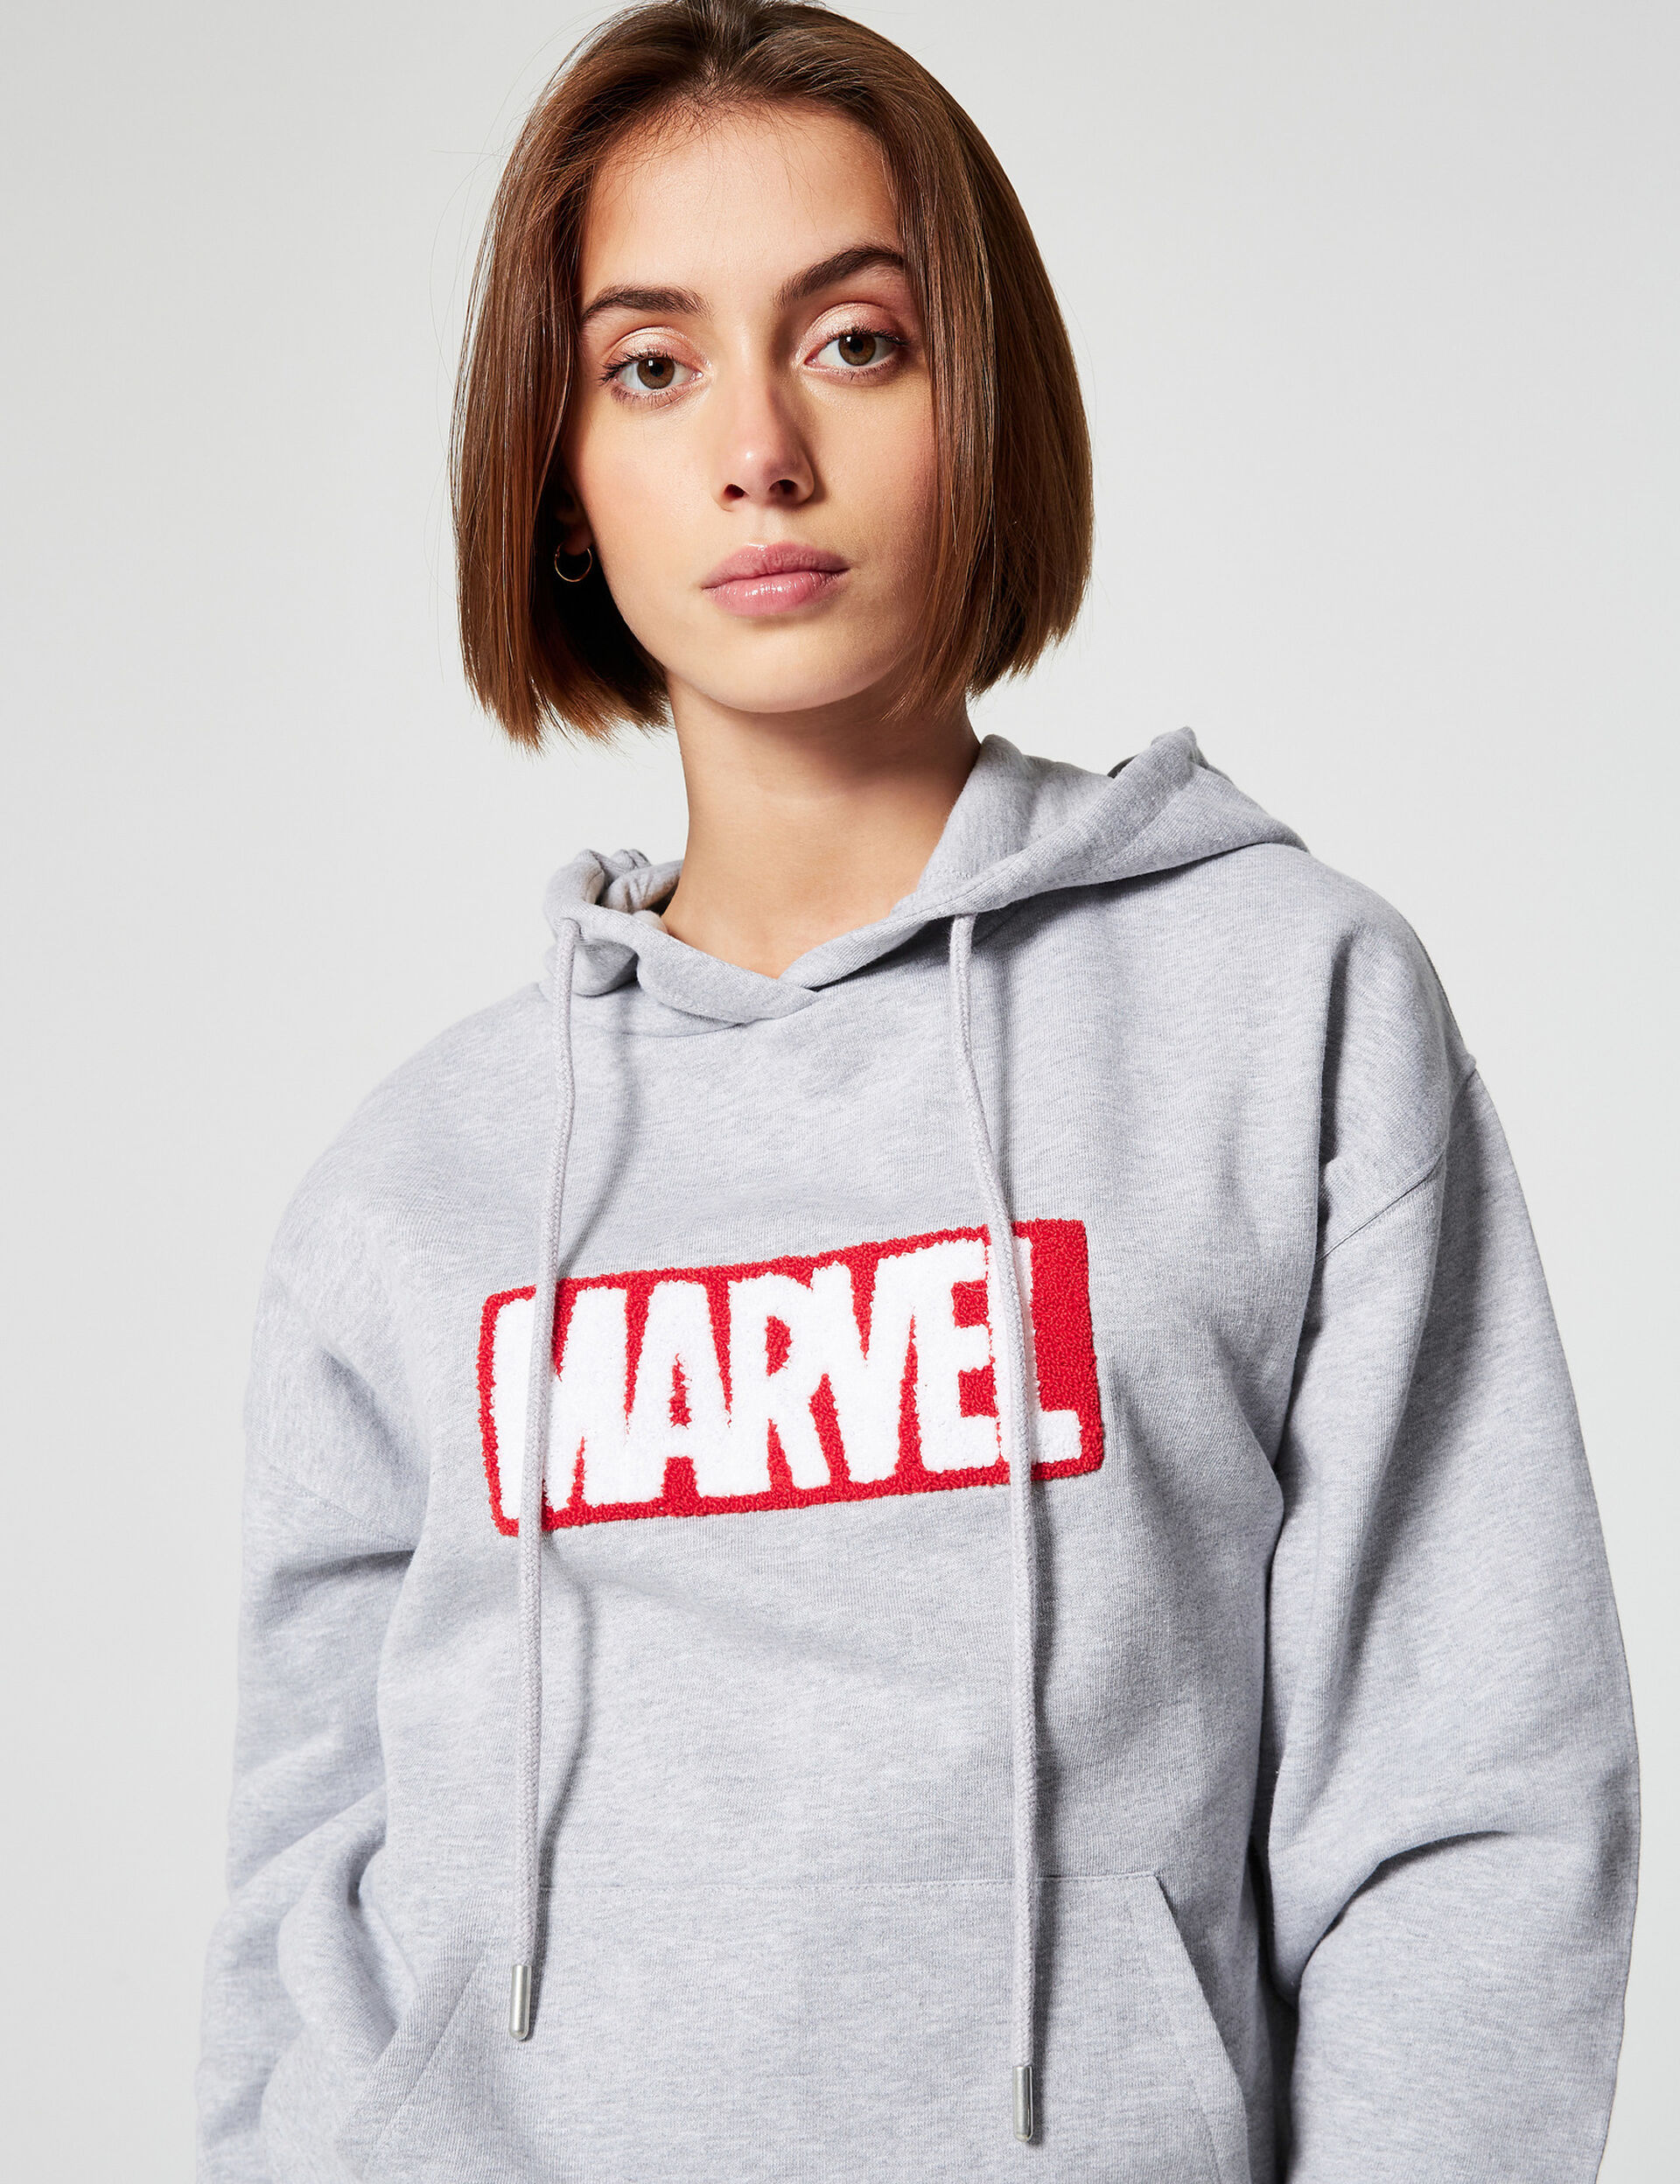 Marvel hoodie